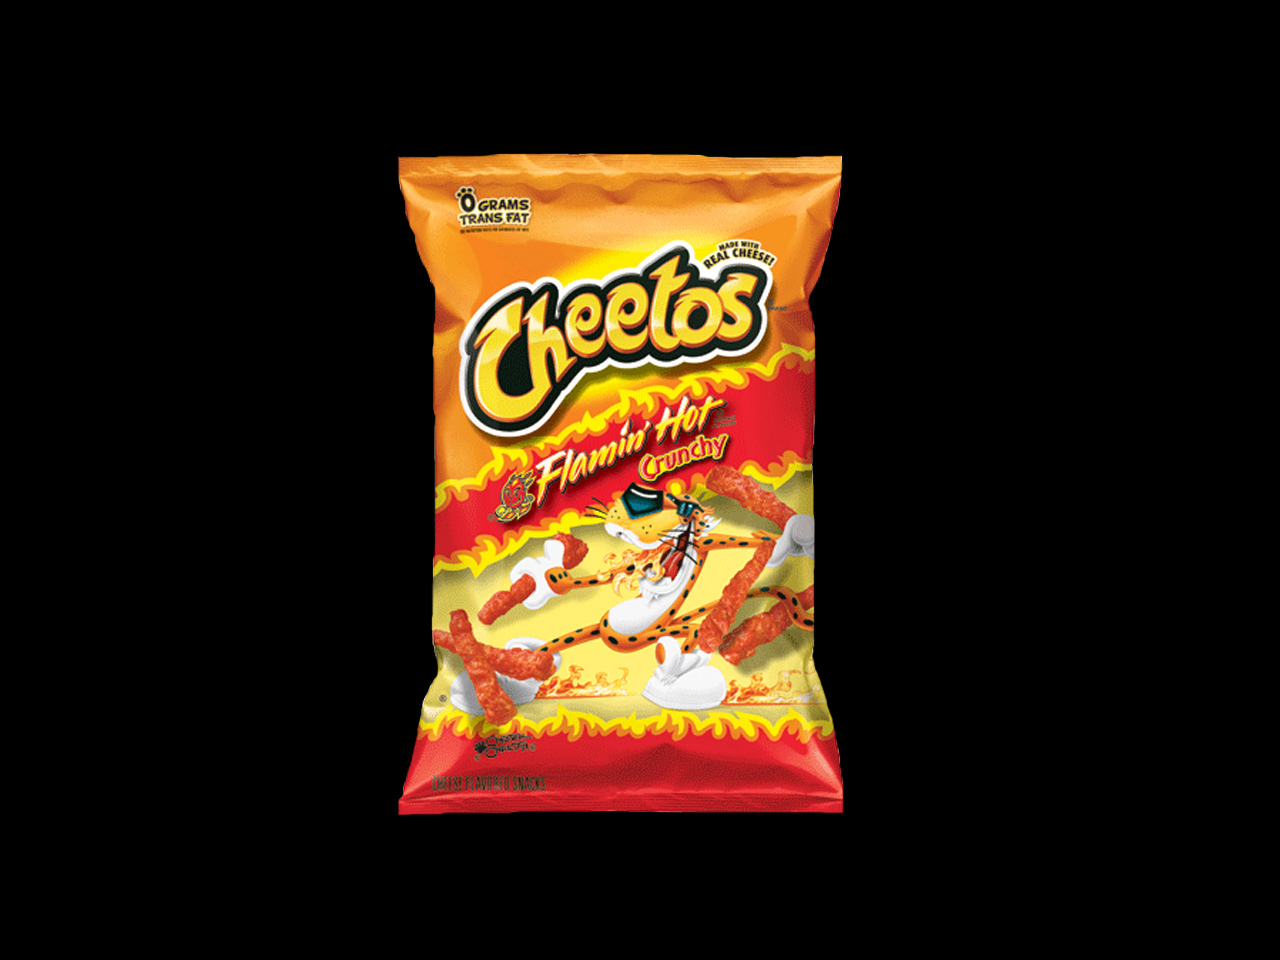 Cheetos Flamin Hot Crunchy Cheese Snacks Case